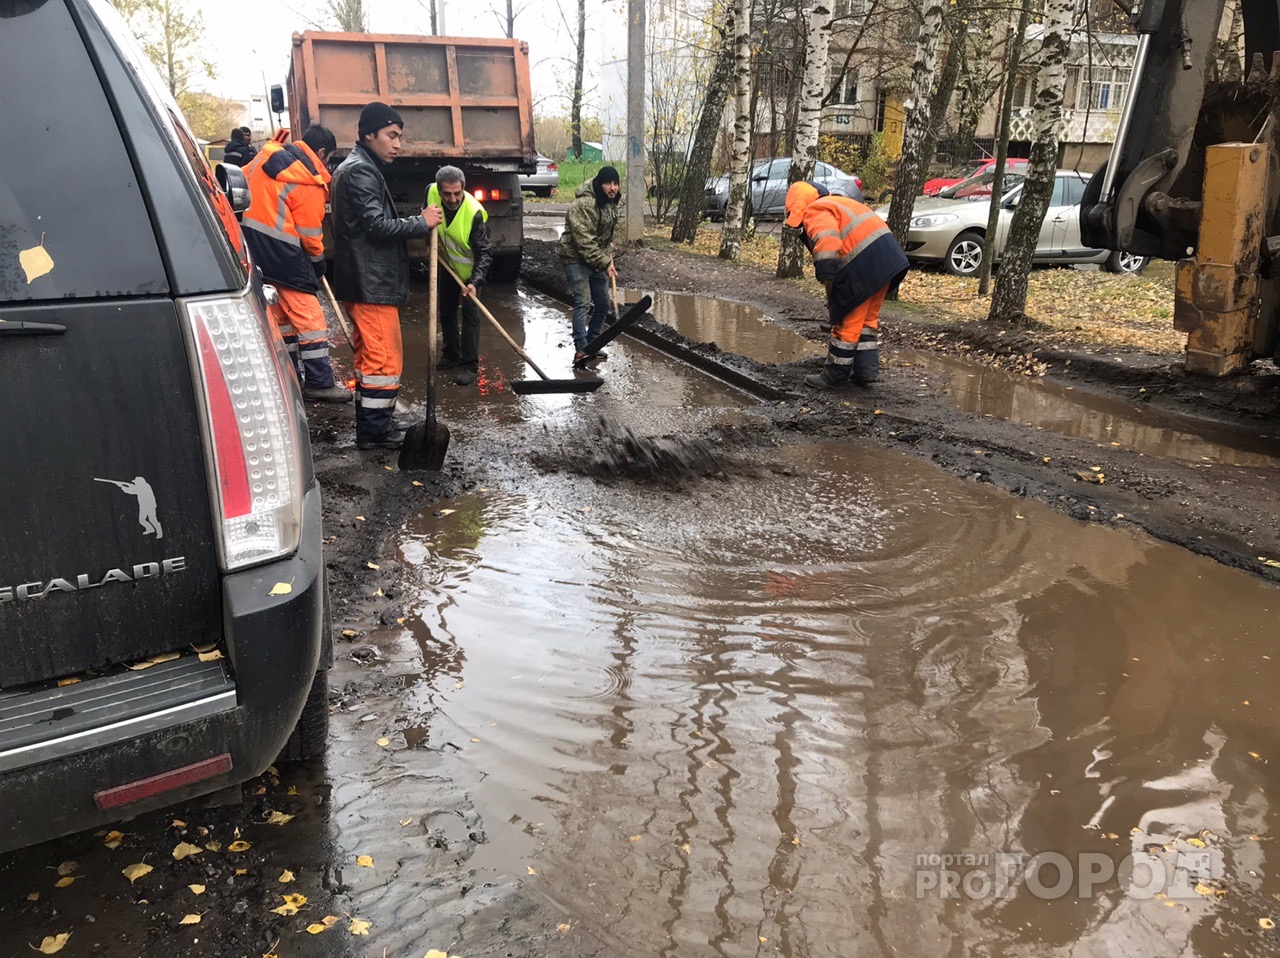 "Это вам подарок": дорожники укладывают асфальт в лужи в Ярославле. Видео